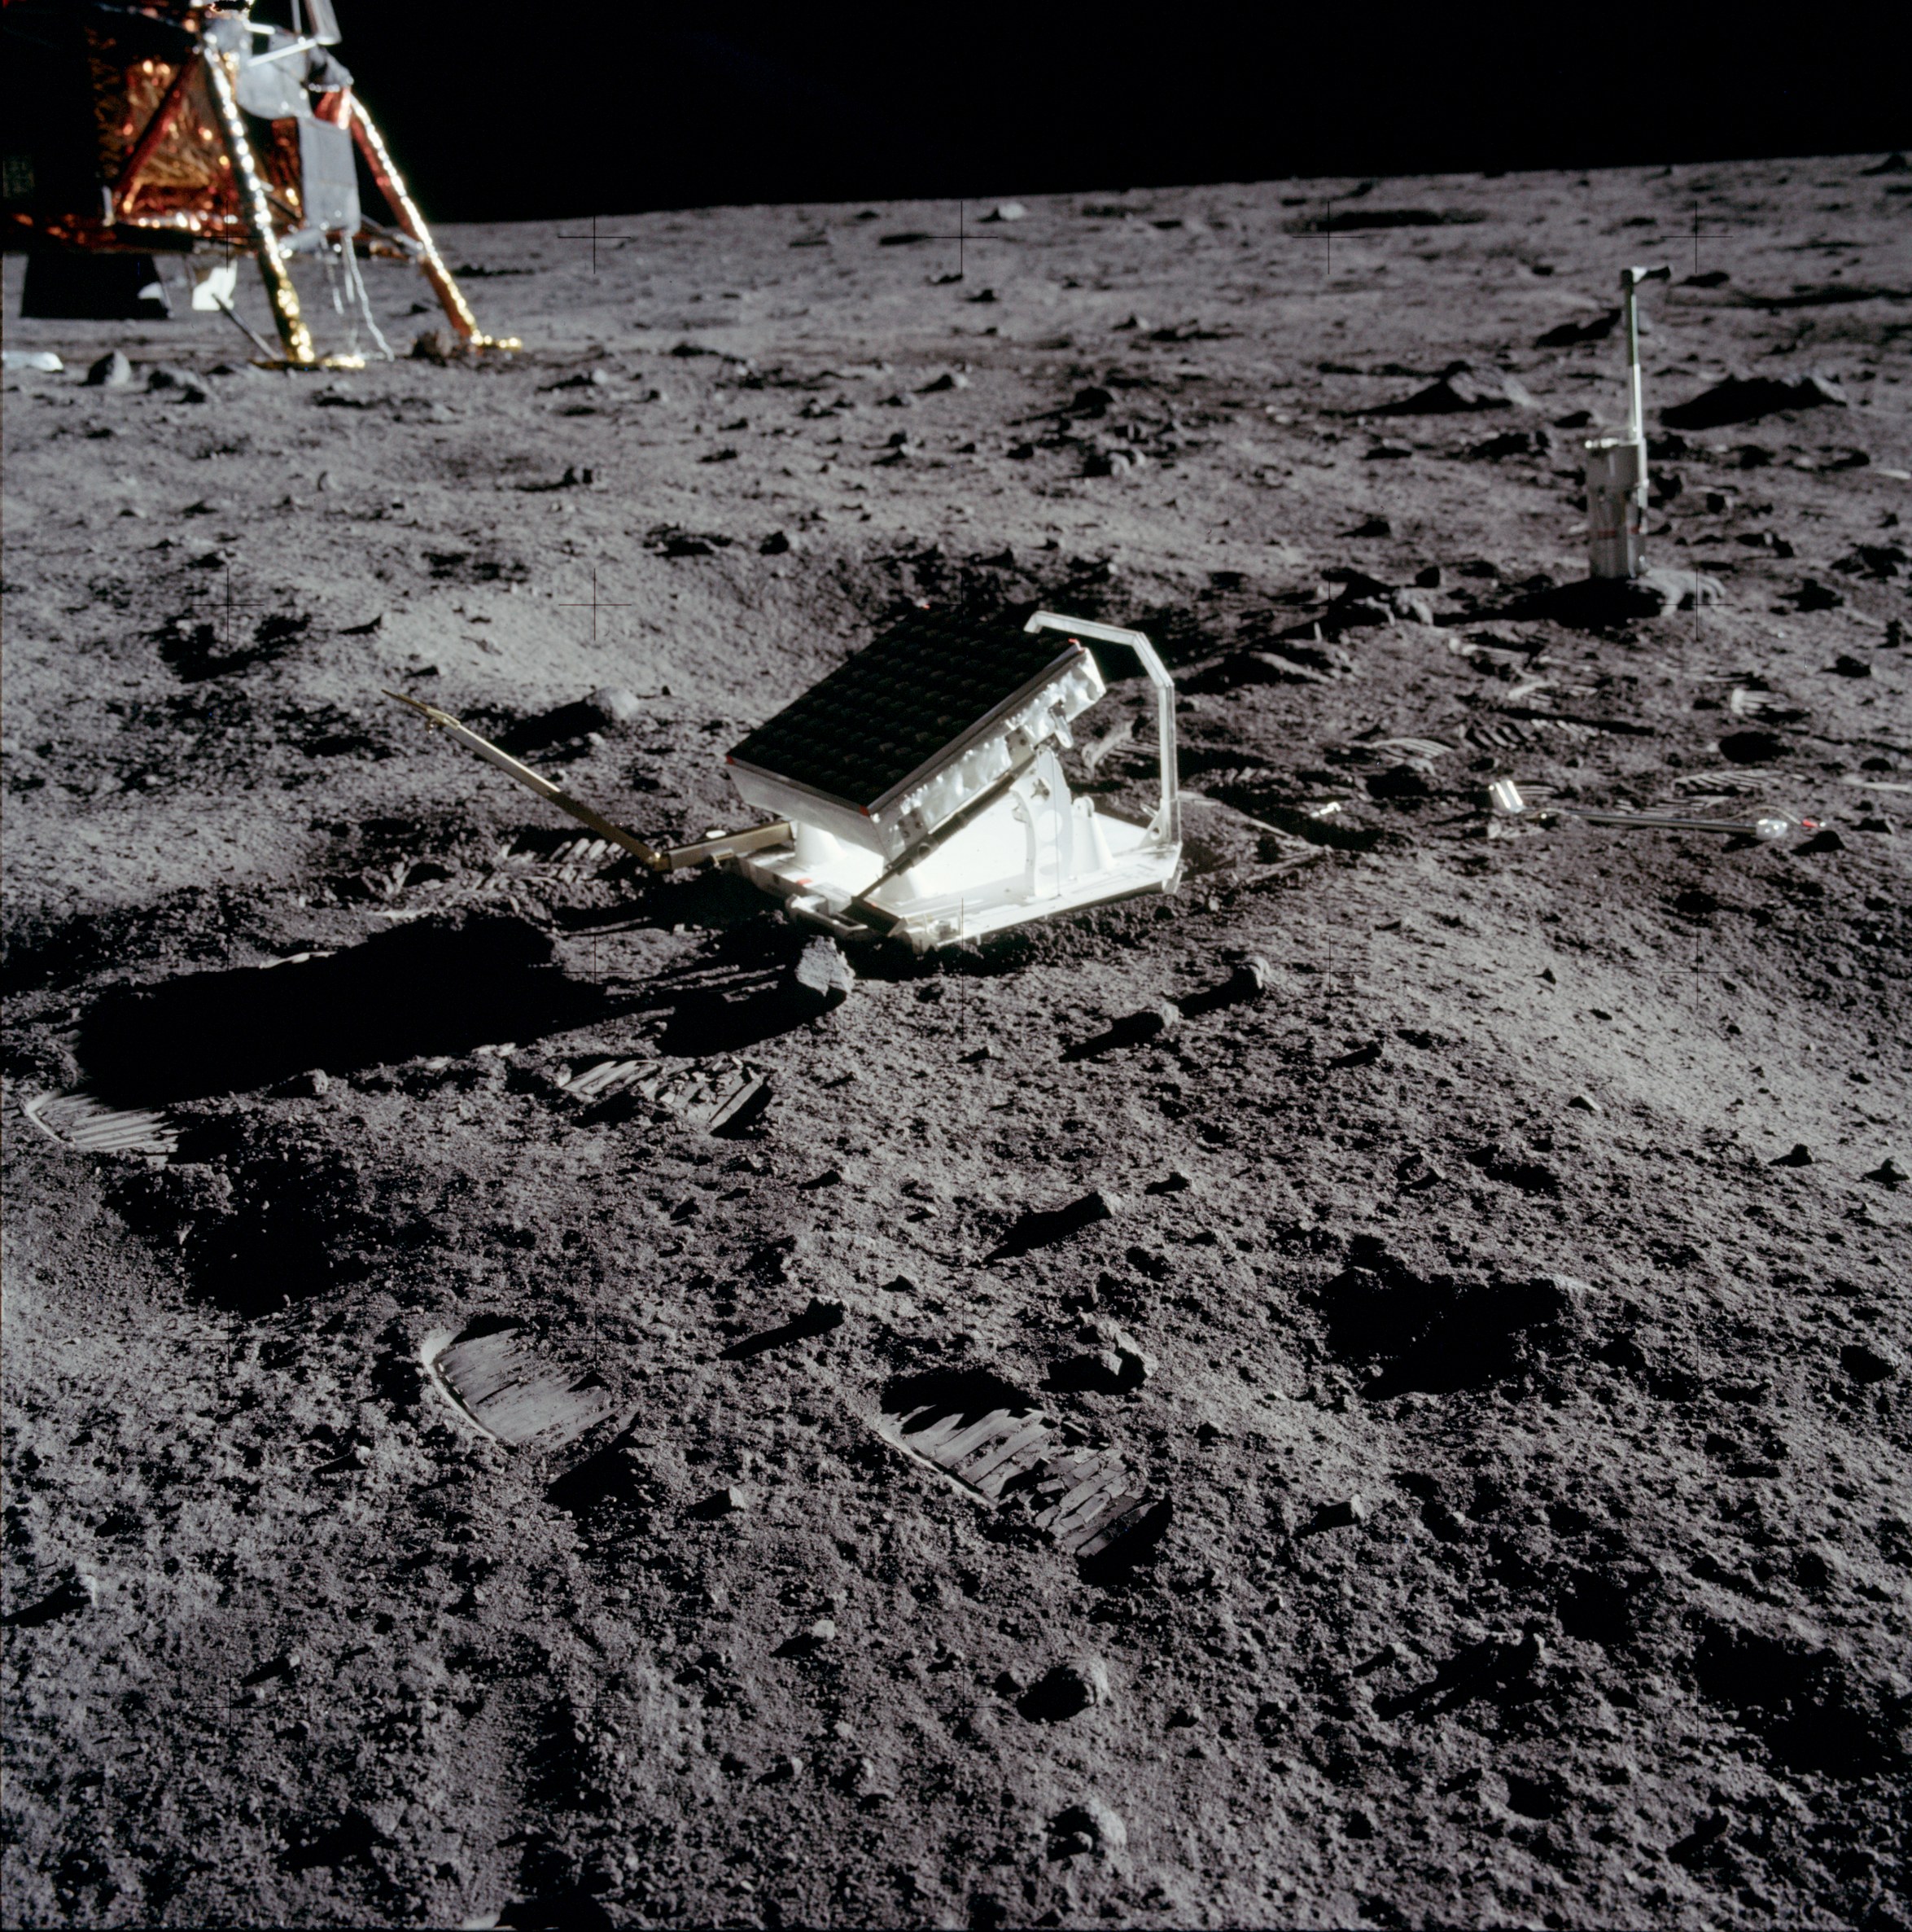 Apollo 11 Lunar Laser Ranging Retro-Reflector - Courtesy of NASA